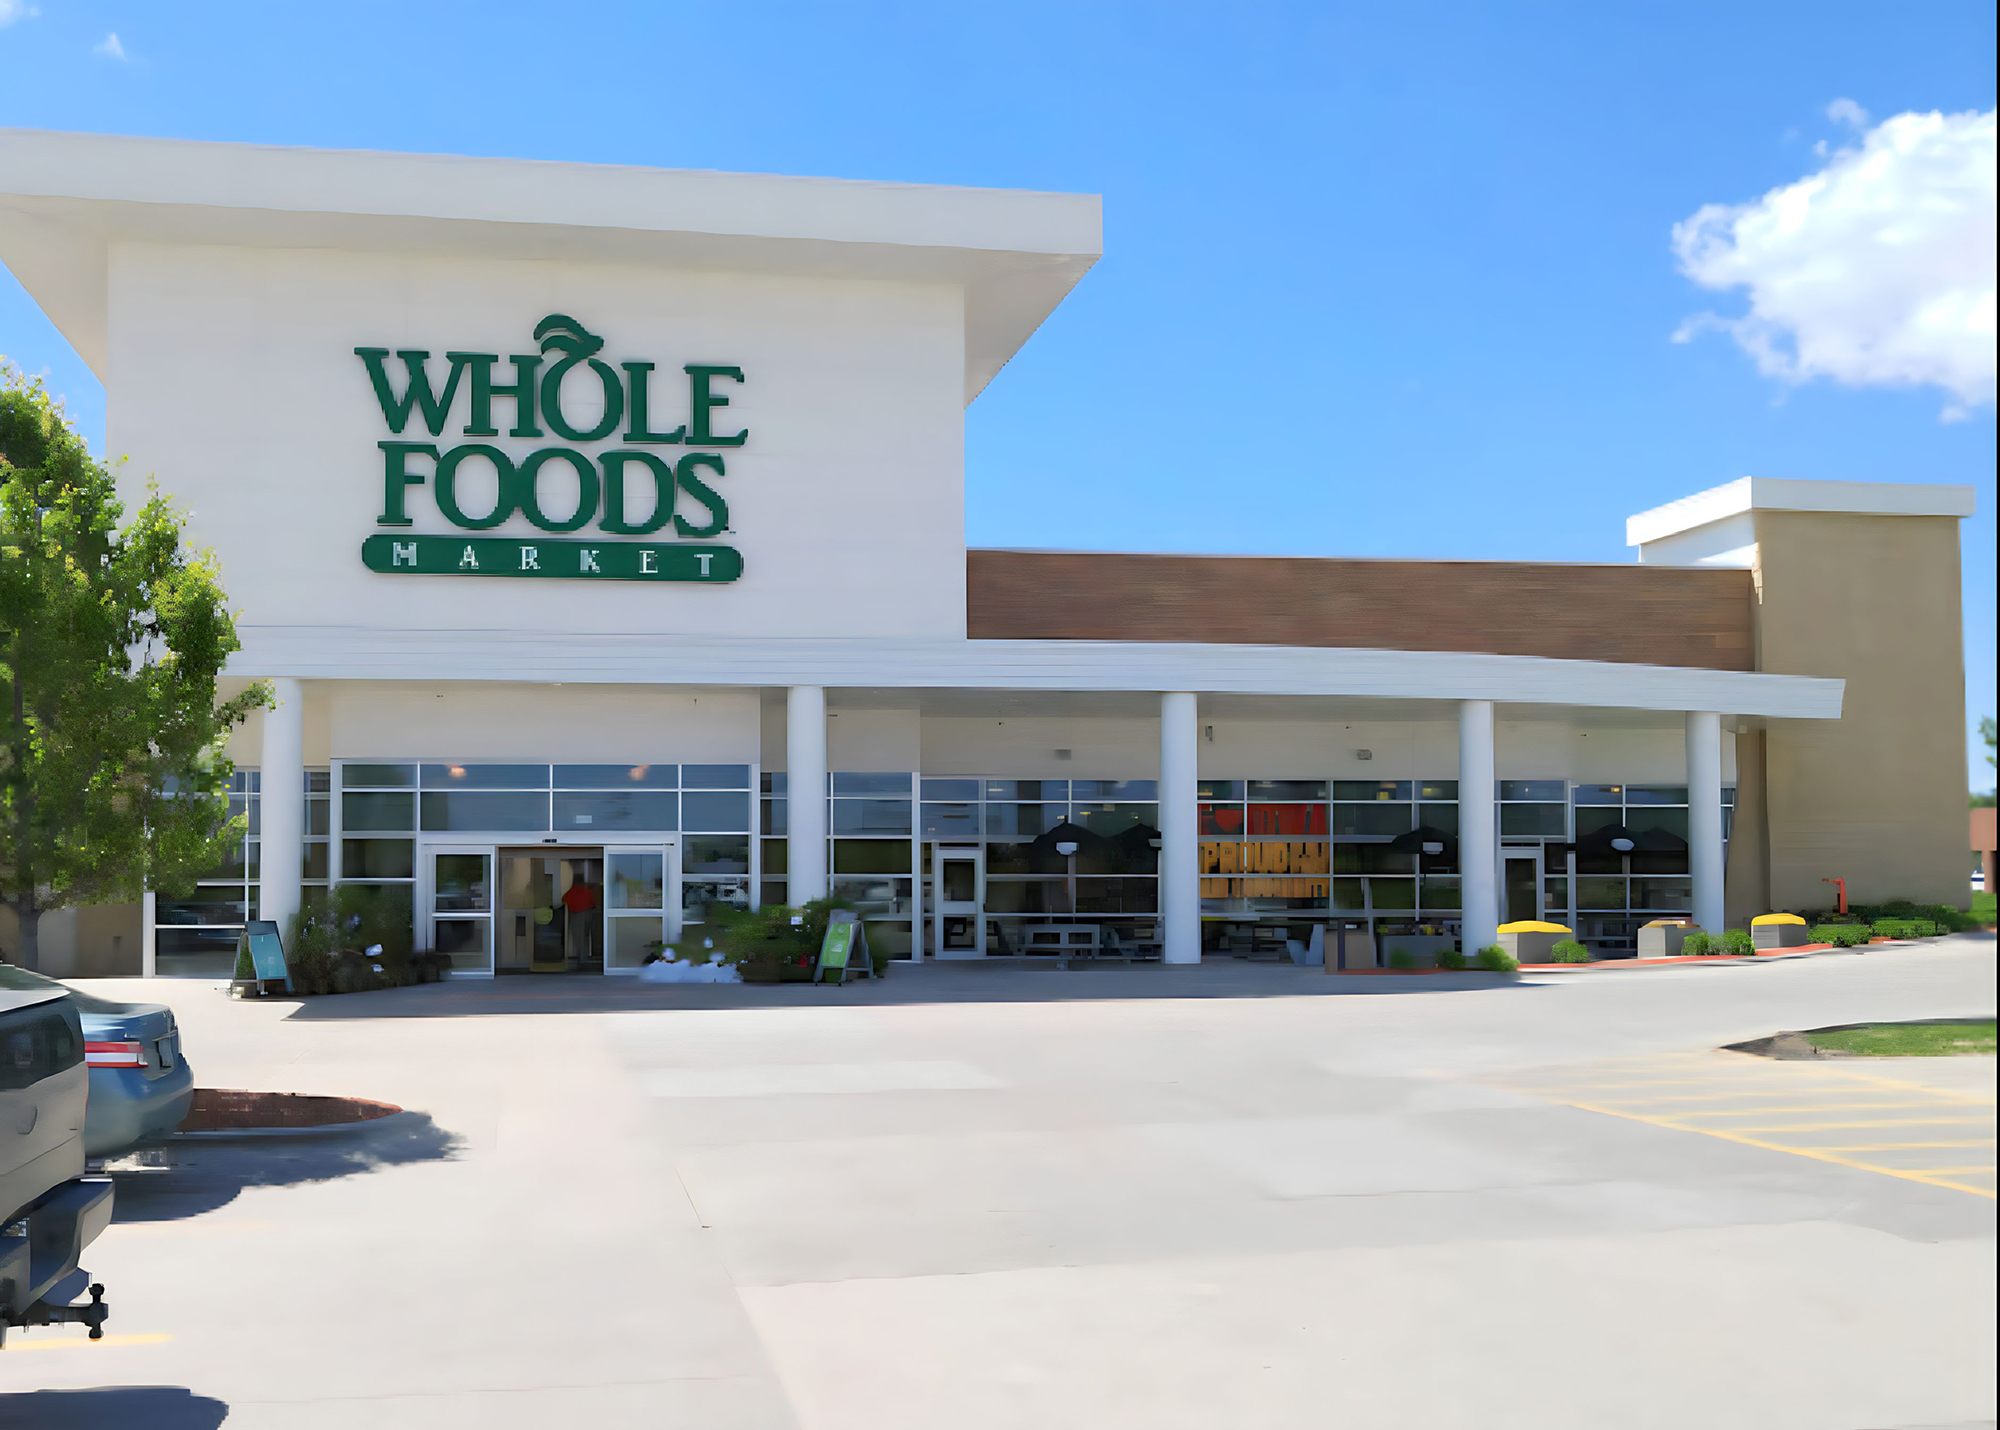 Whole Foods Market - West Des Moines, IA - Luke Draily Construction